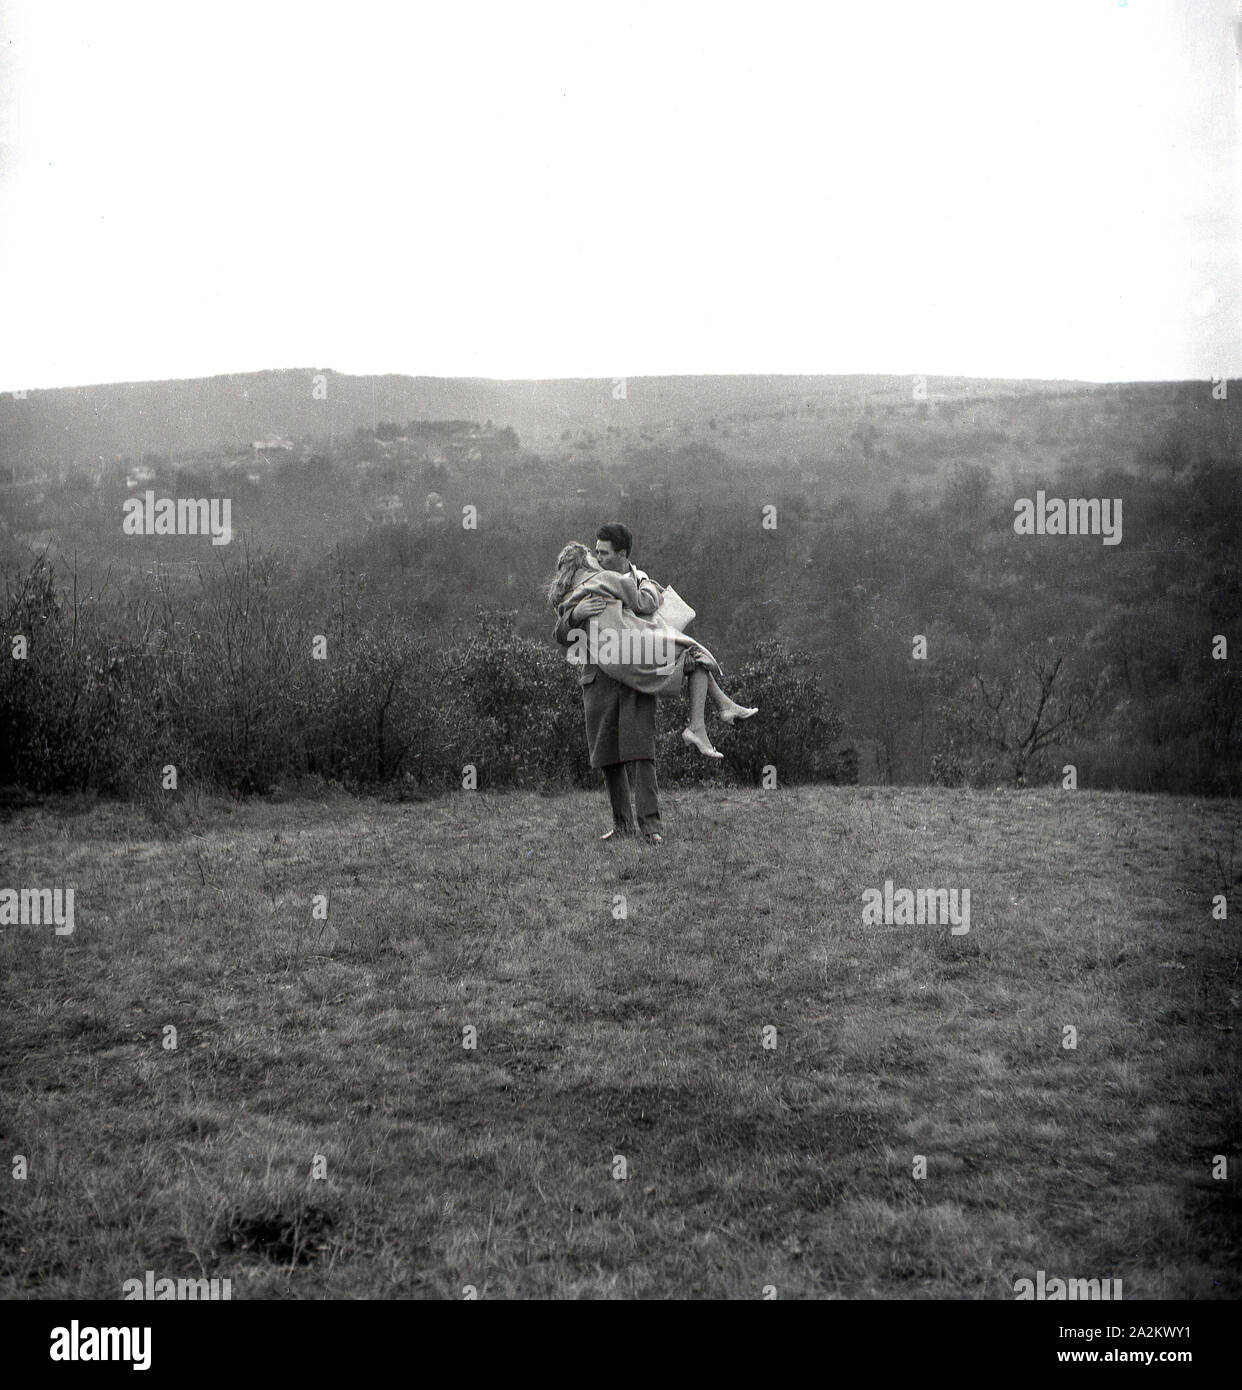 Années 1960, historique, deux amoureux sur une colline, un homme portant et embrassant sa petite amie sur une haute montagne herbeuse, Angleterre, Royaume-Uni. Banque D'Images